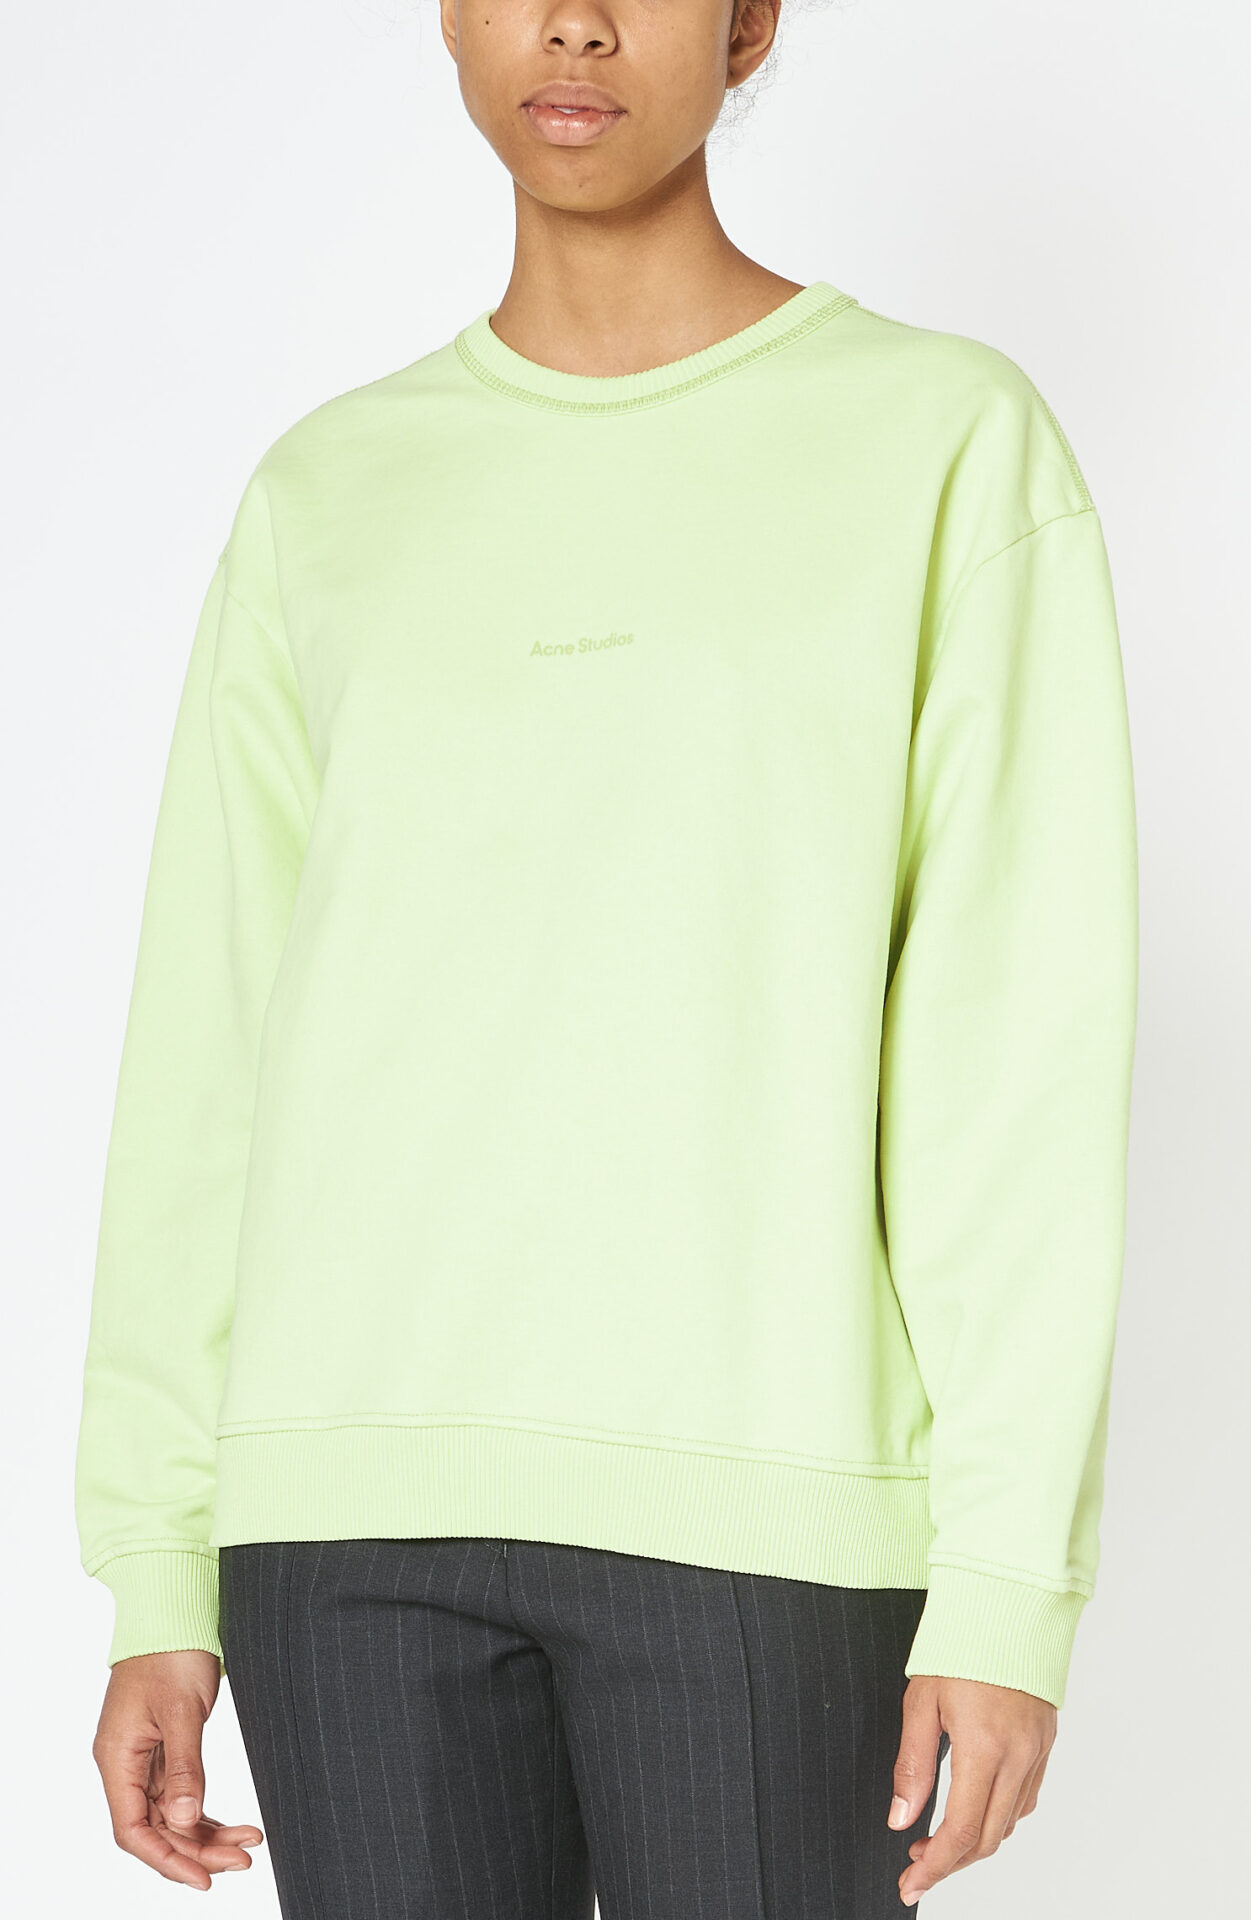 Acne - Lime green sweater "Fierre Schwittenberg